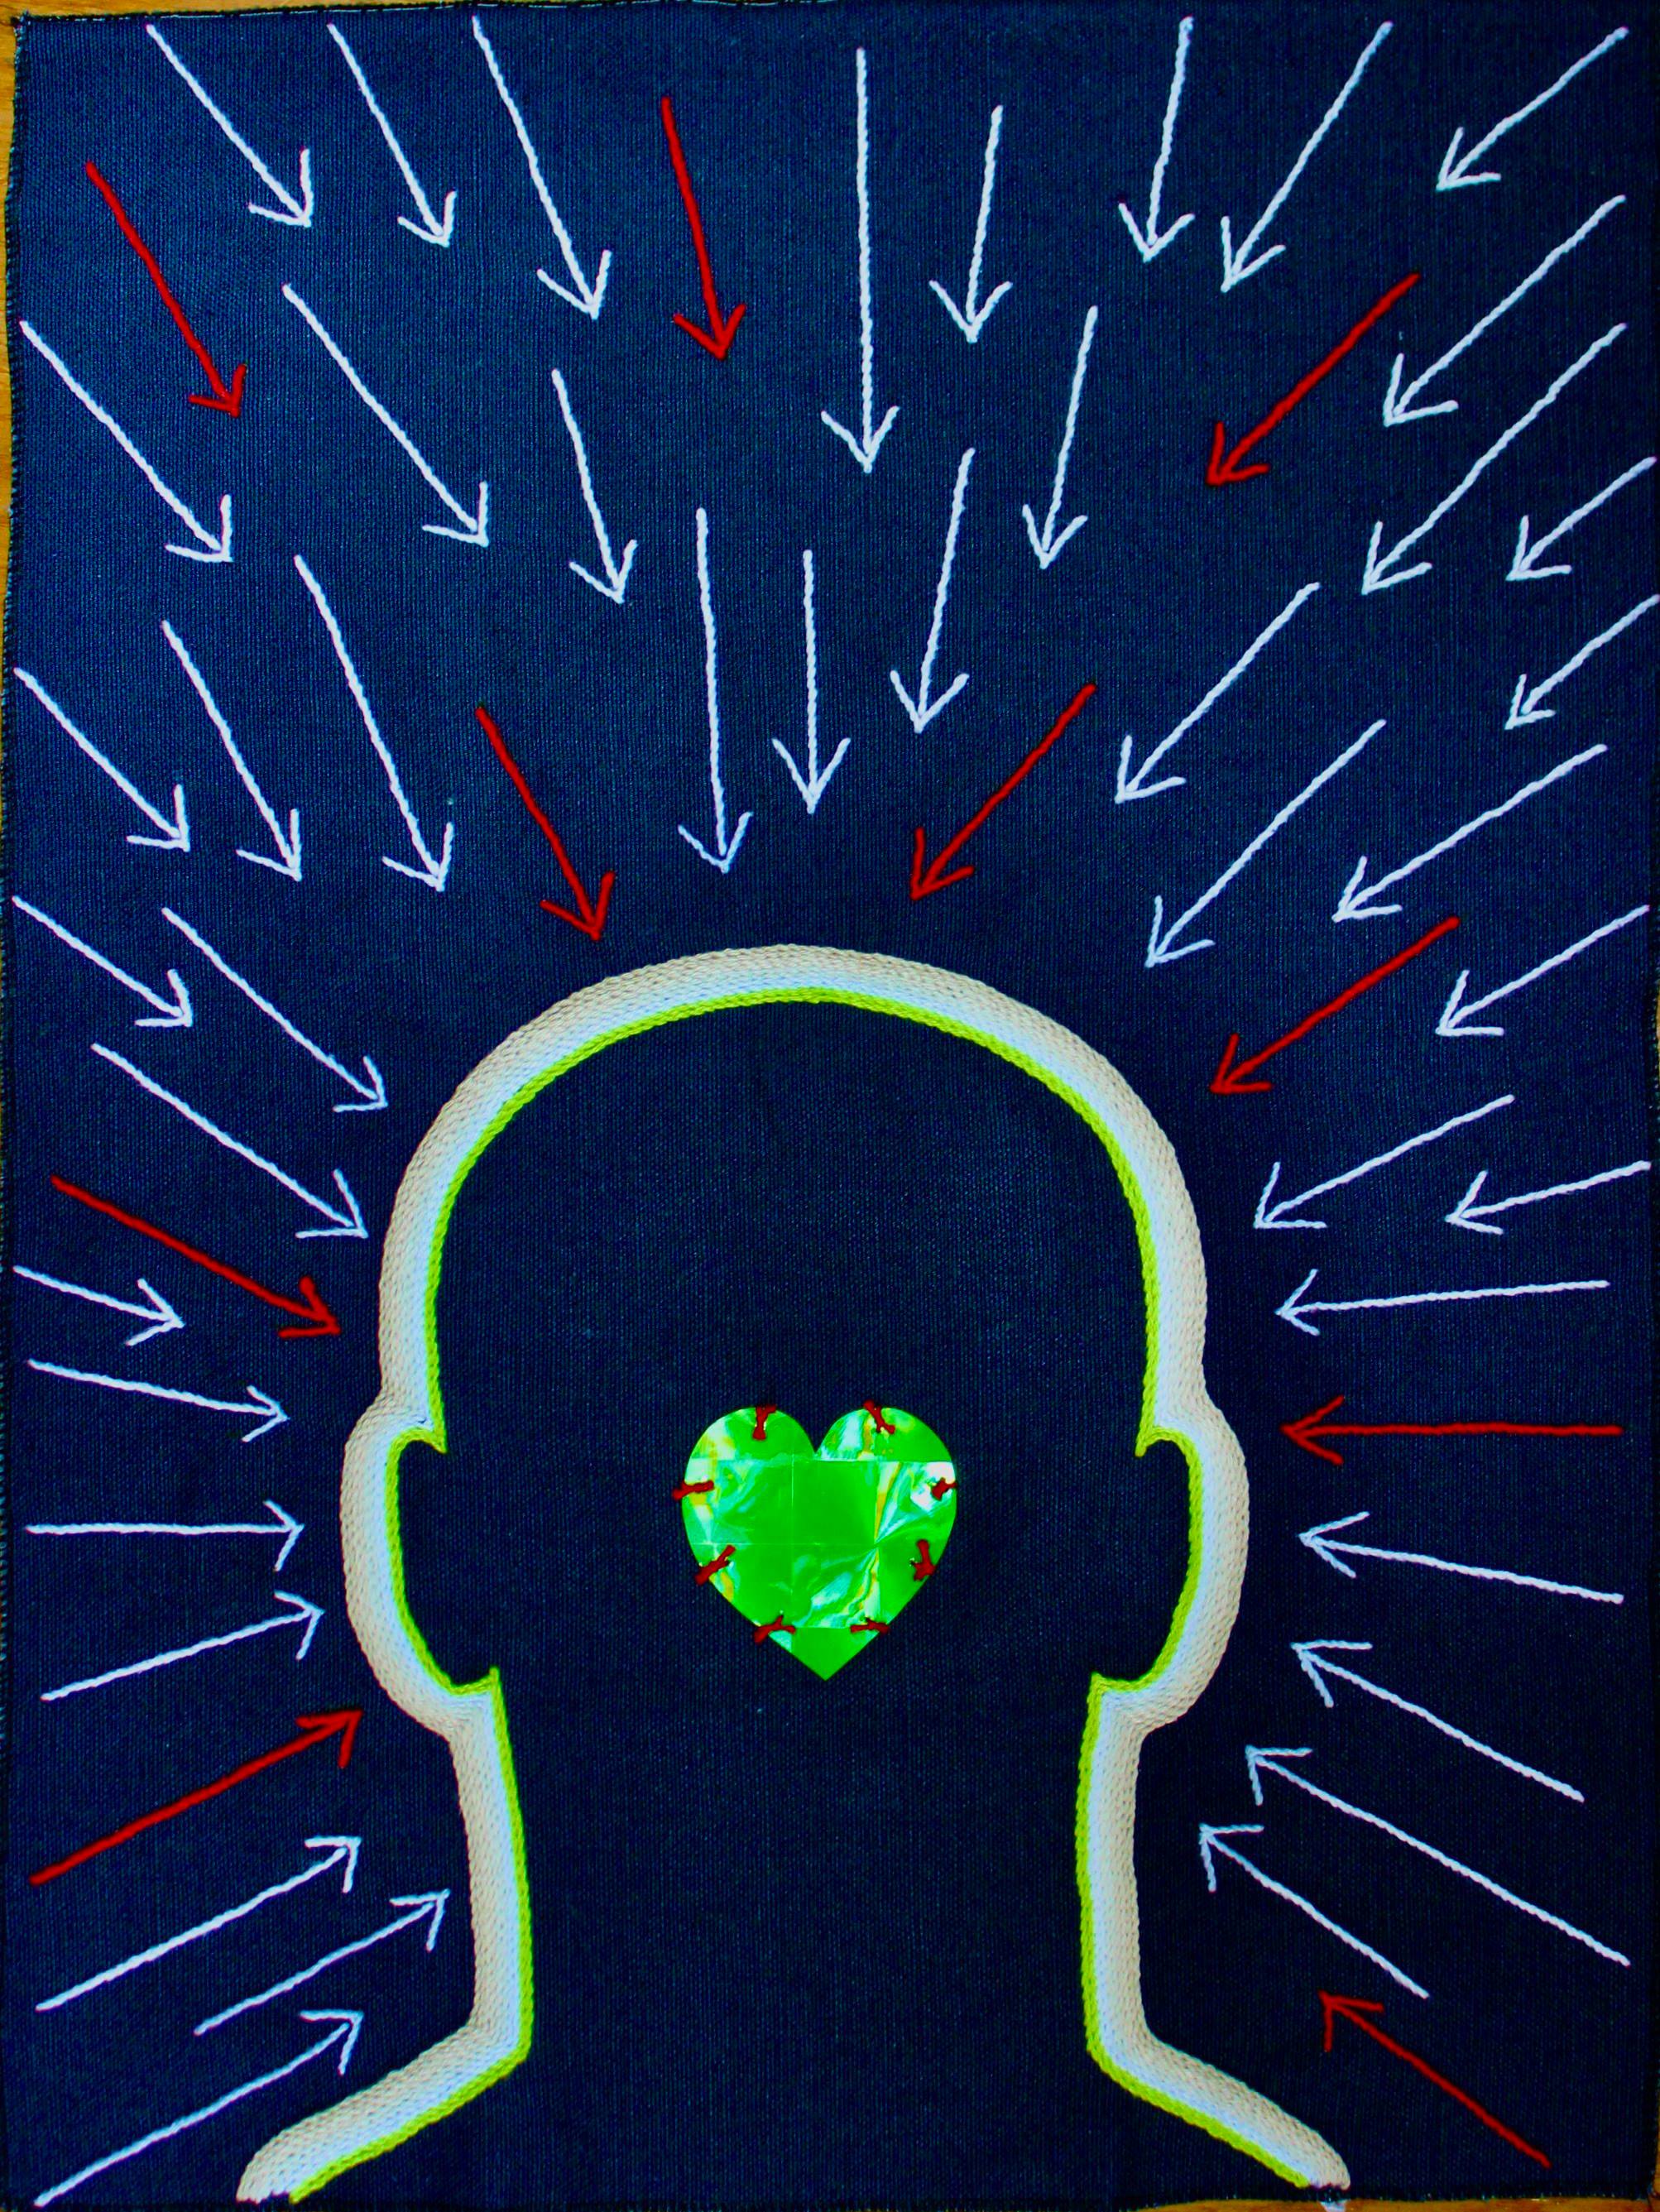 "Green heart